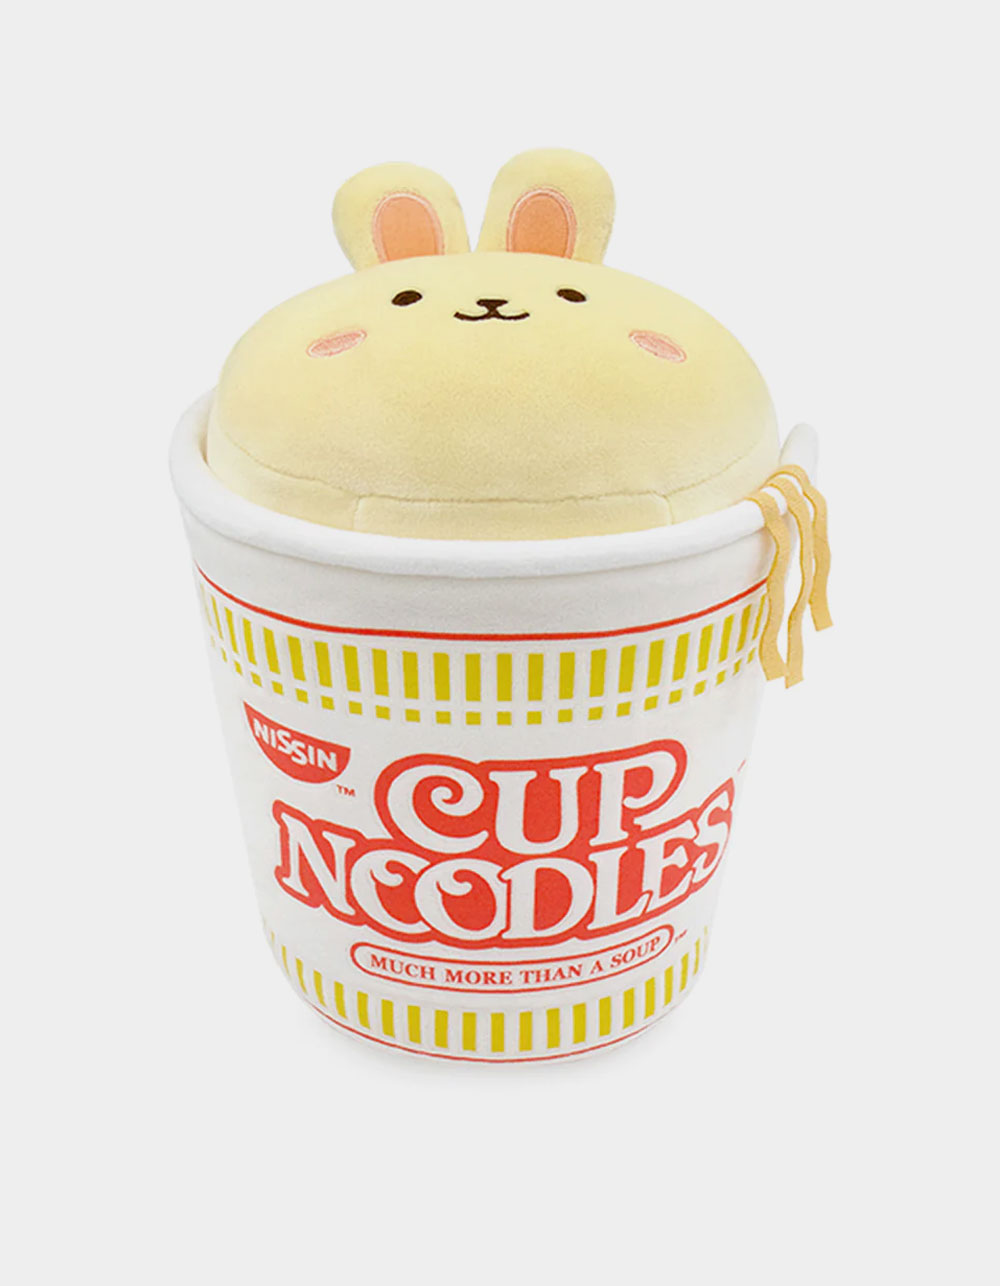 Anirollz X Cup Noodles 9